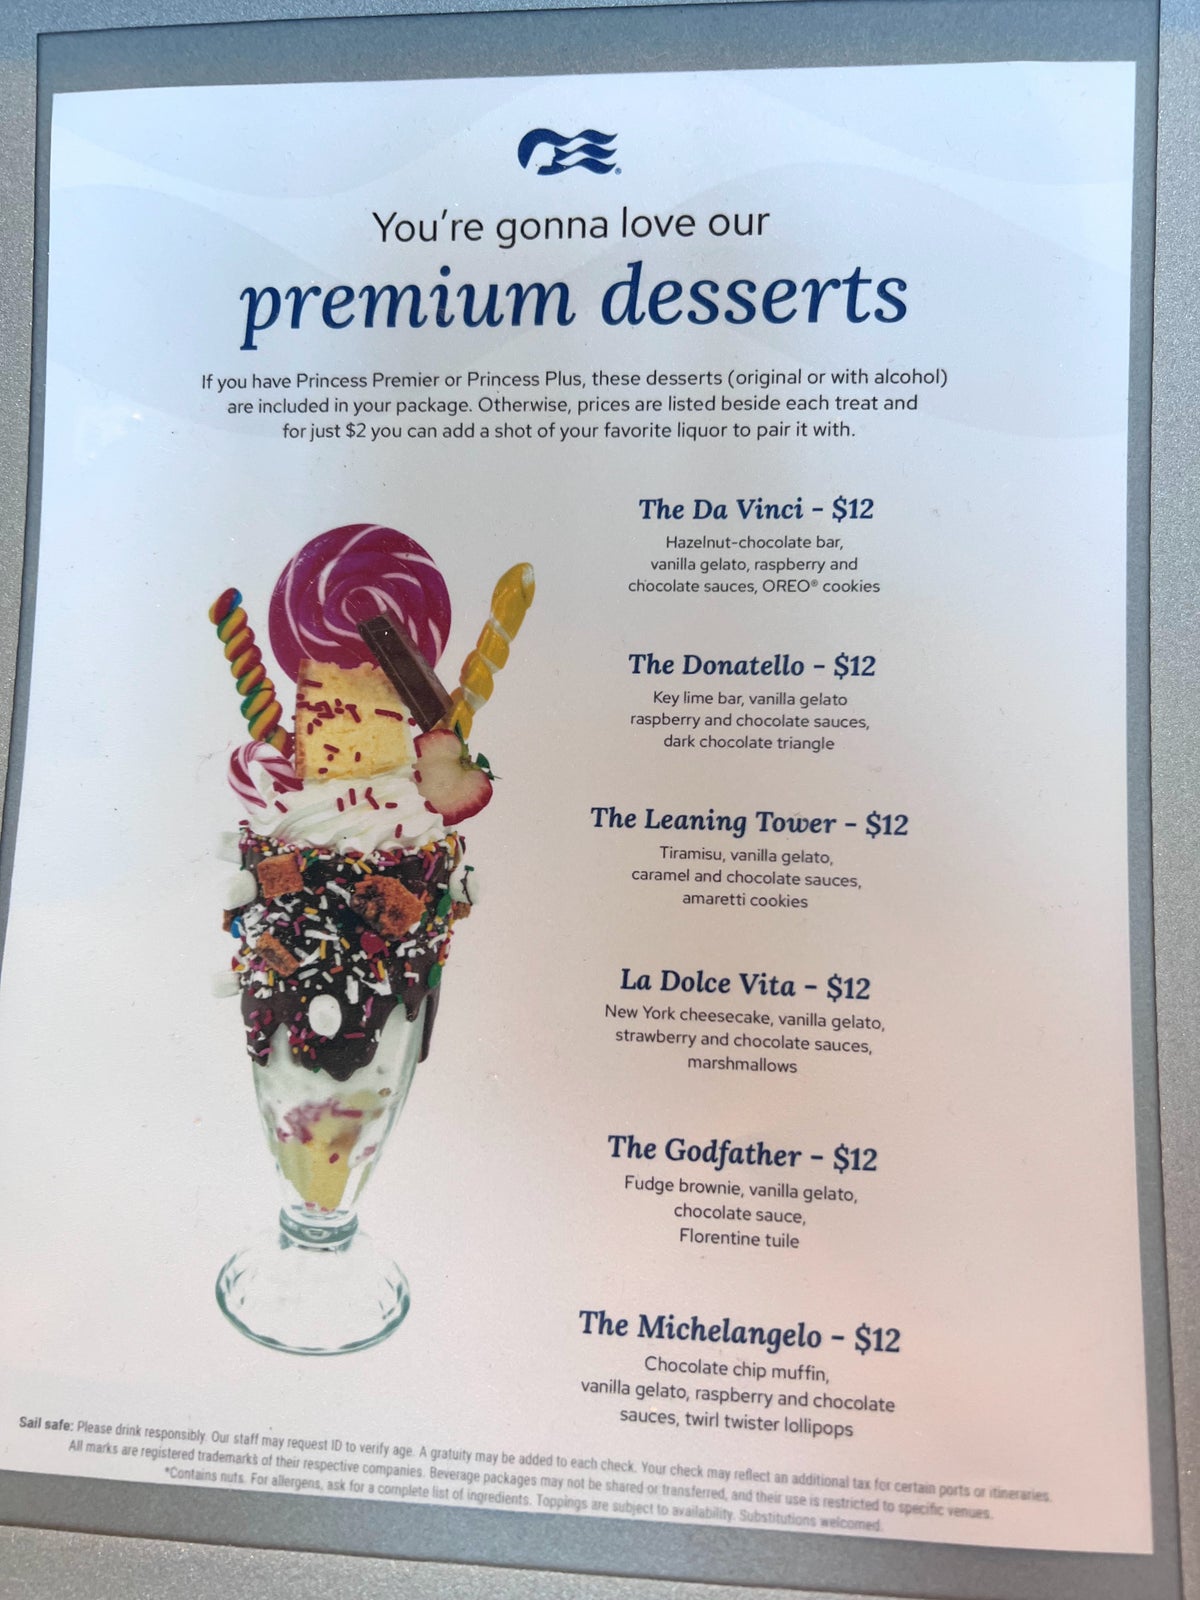 Princess Cruises premium desserts